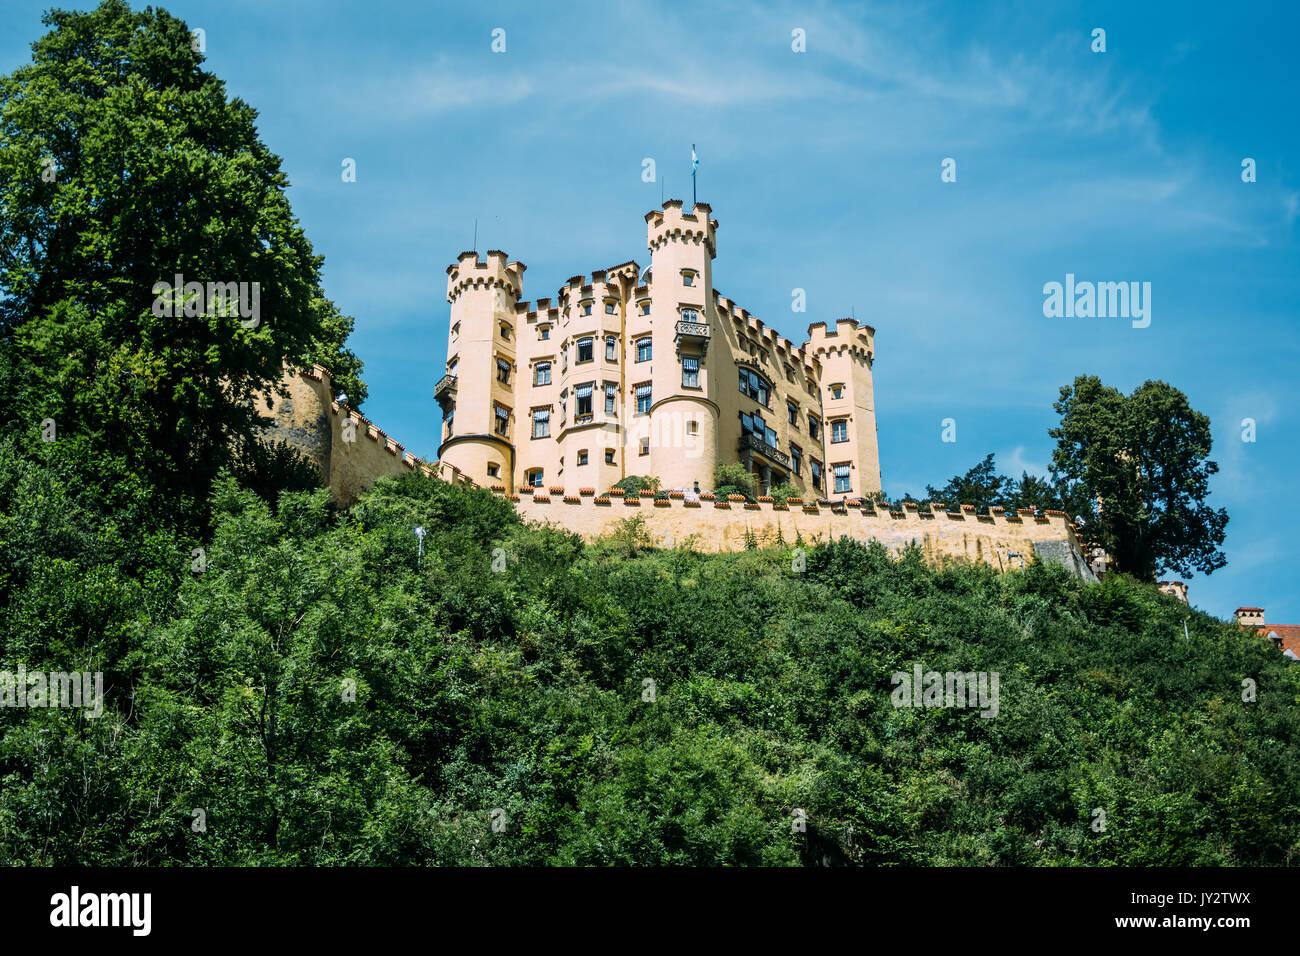 Il castello di Hohenschwangau su una collina con un cielo blu visto dal di sotto. Foto Stock